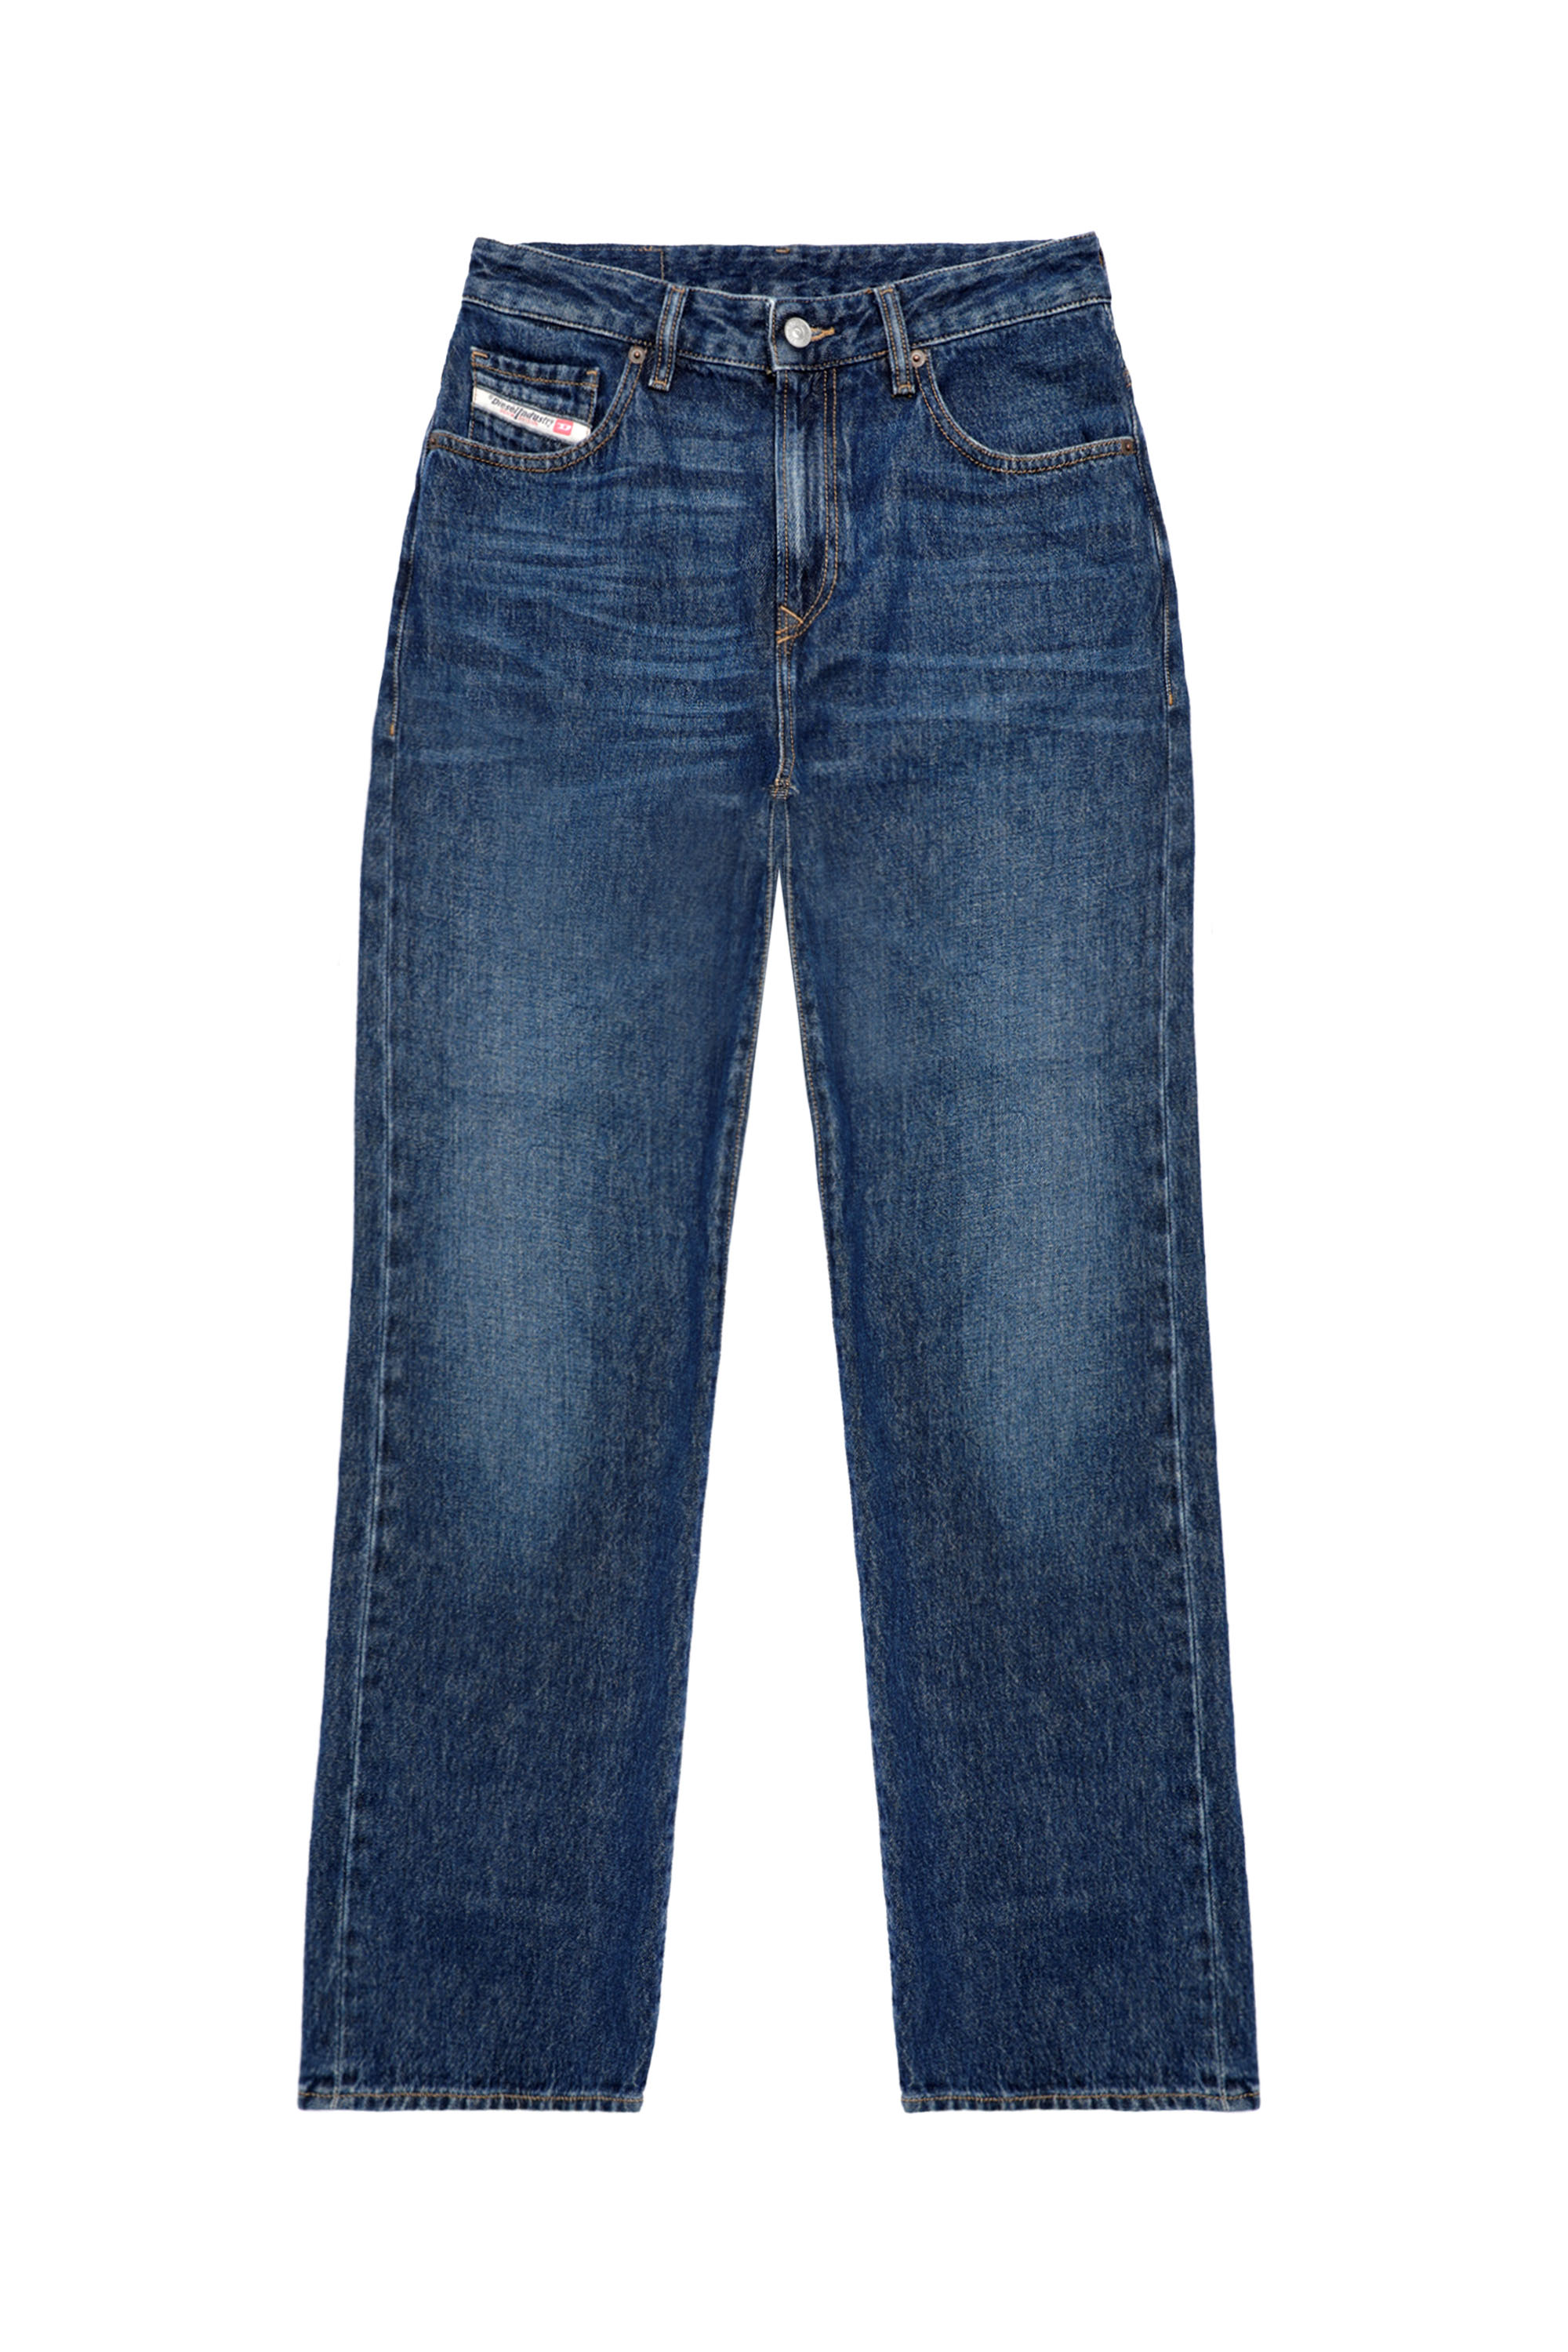 Diesel® 1999 D-Reggy | Women's Straight Jeans: Wide leg, loose fit